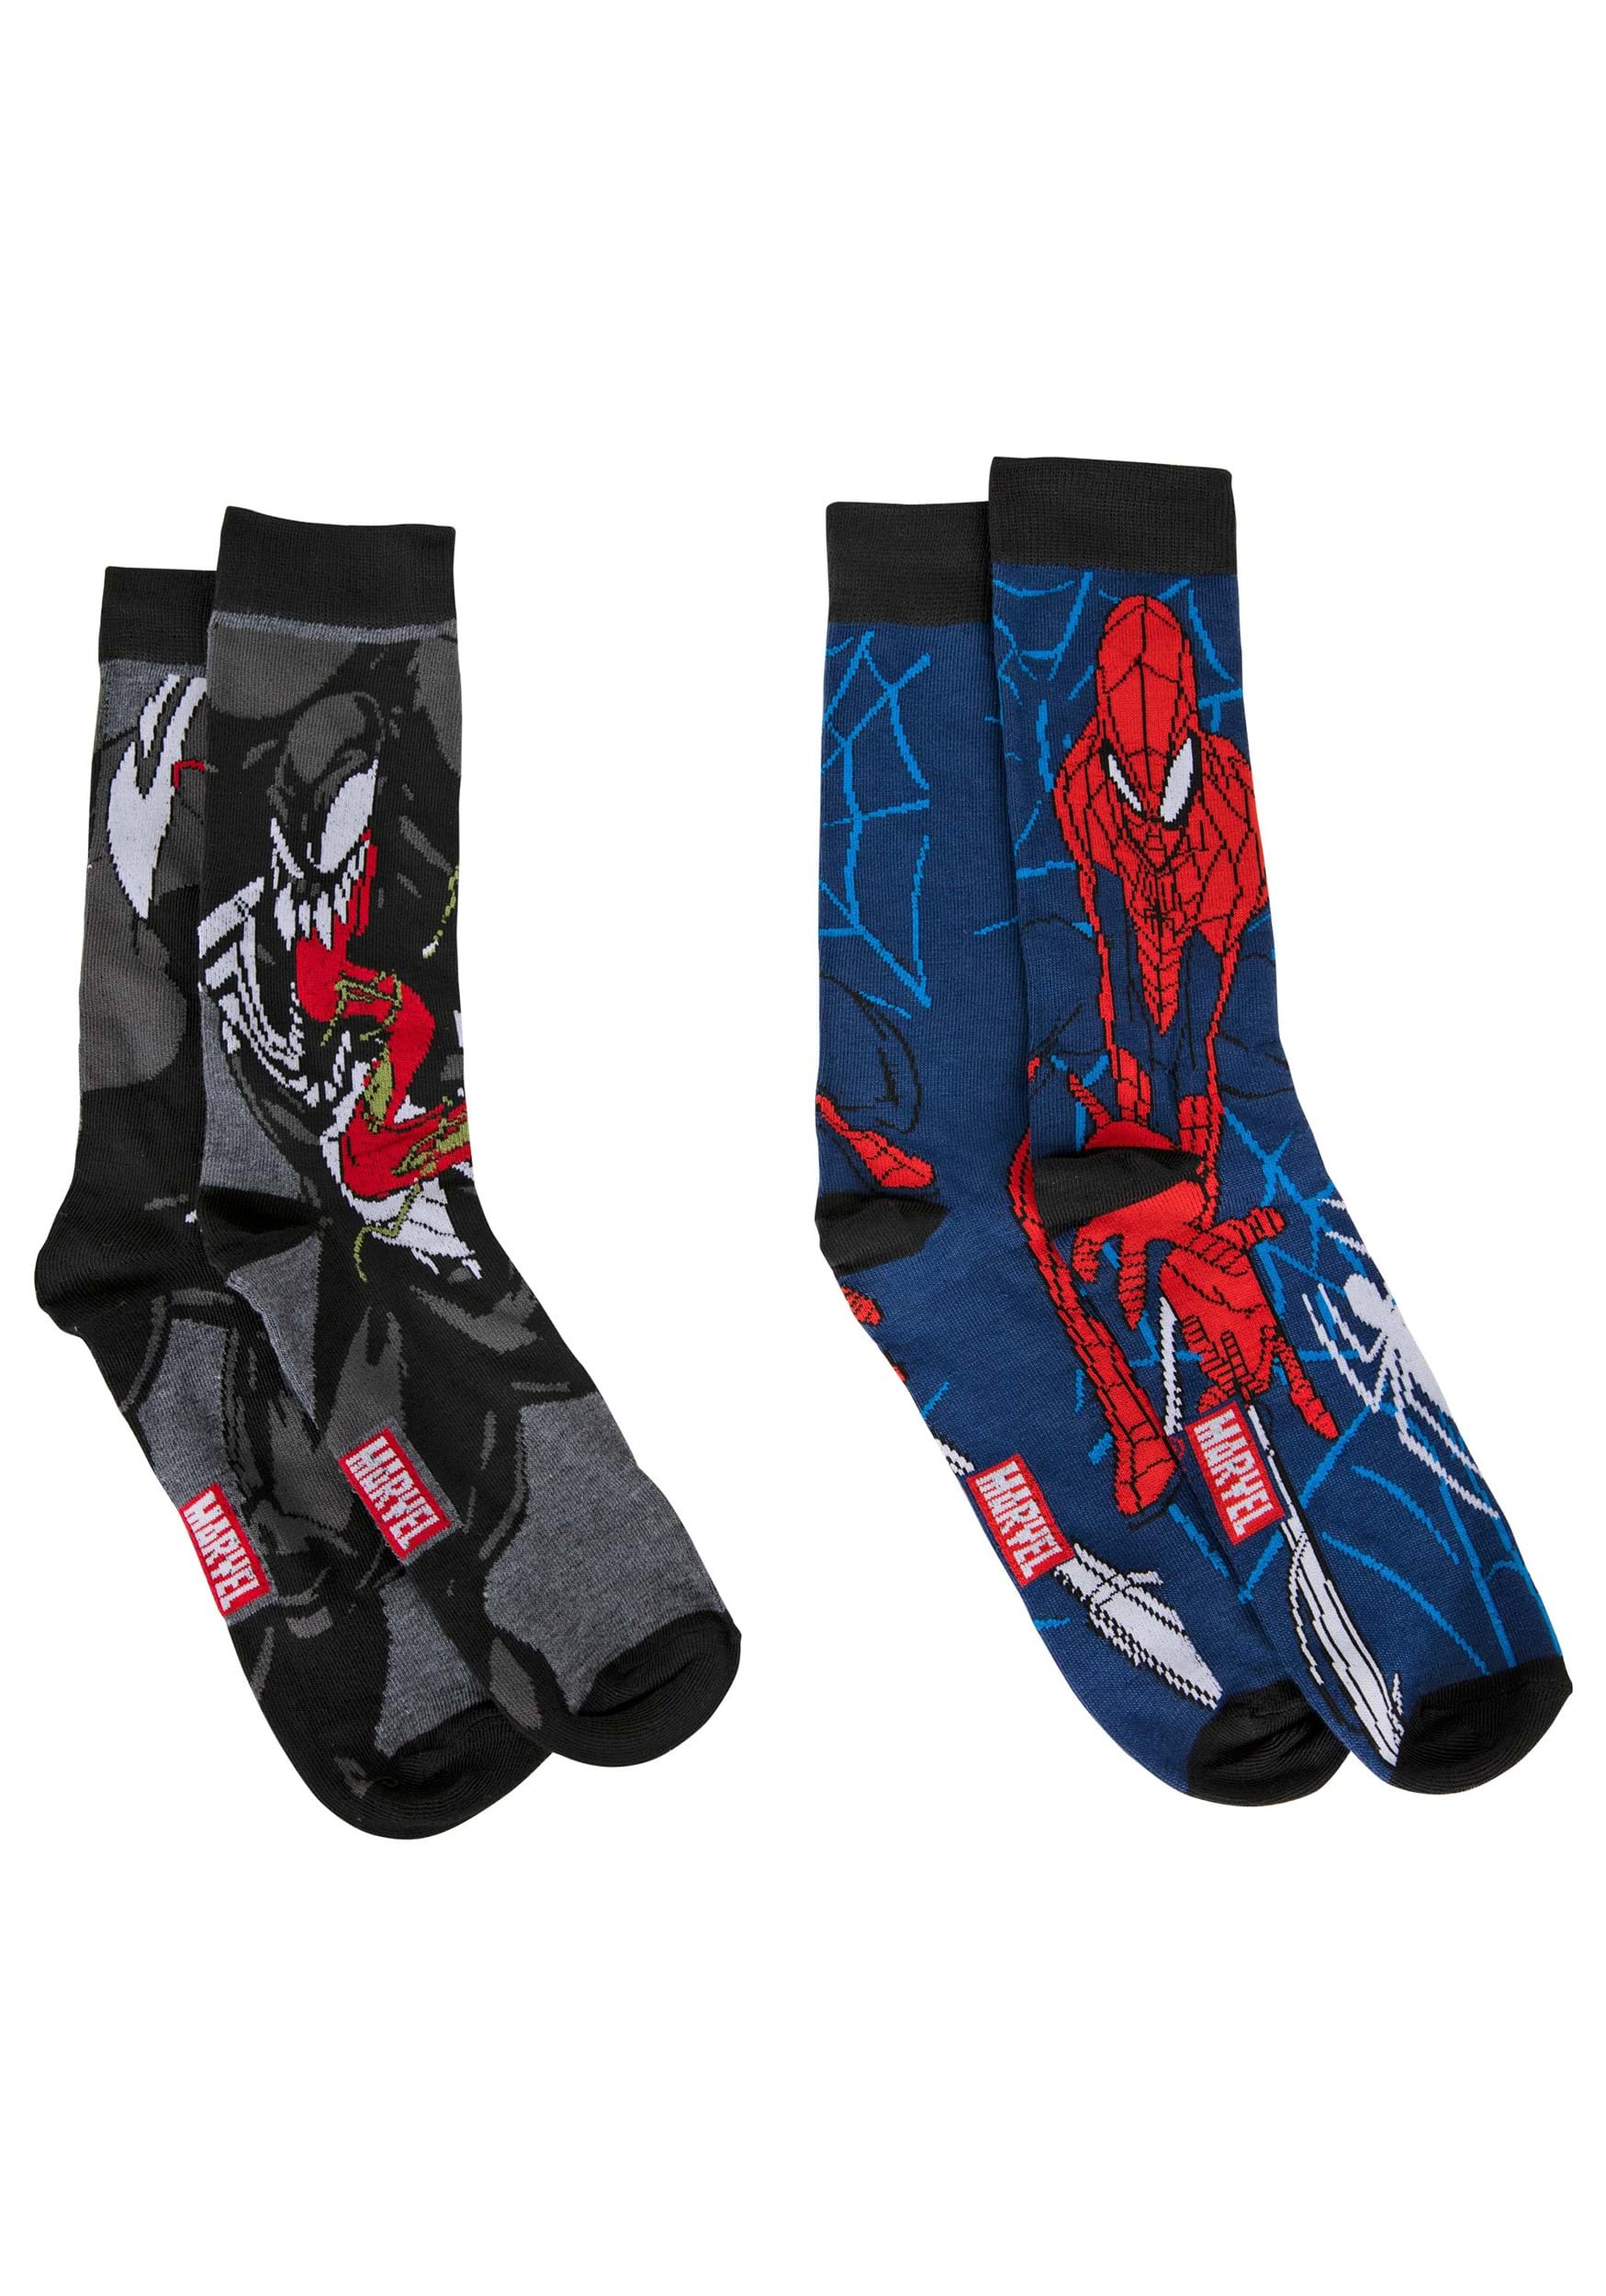 2 Pairs Avengers Crew Socks Shoe Size 6-12 Licensed MARVEL HYP Men‘s  Sock 